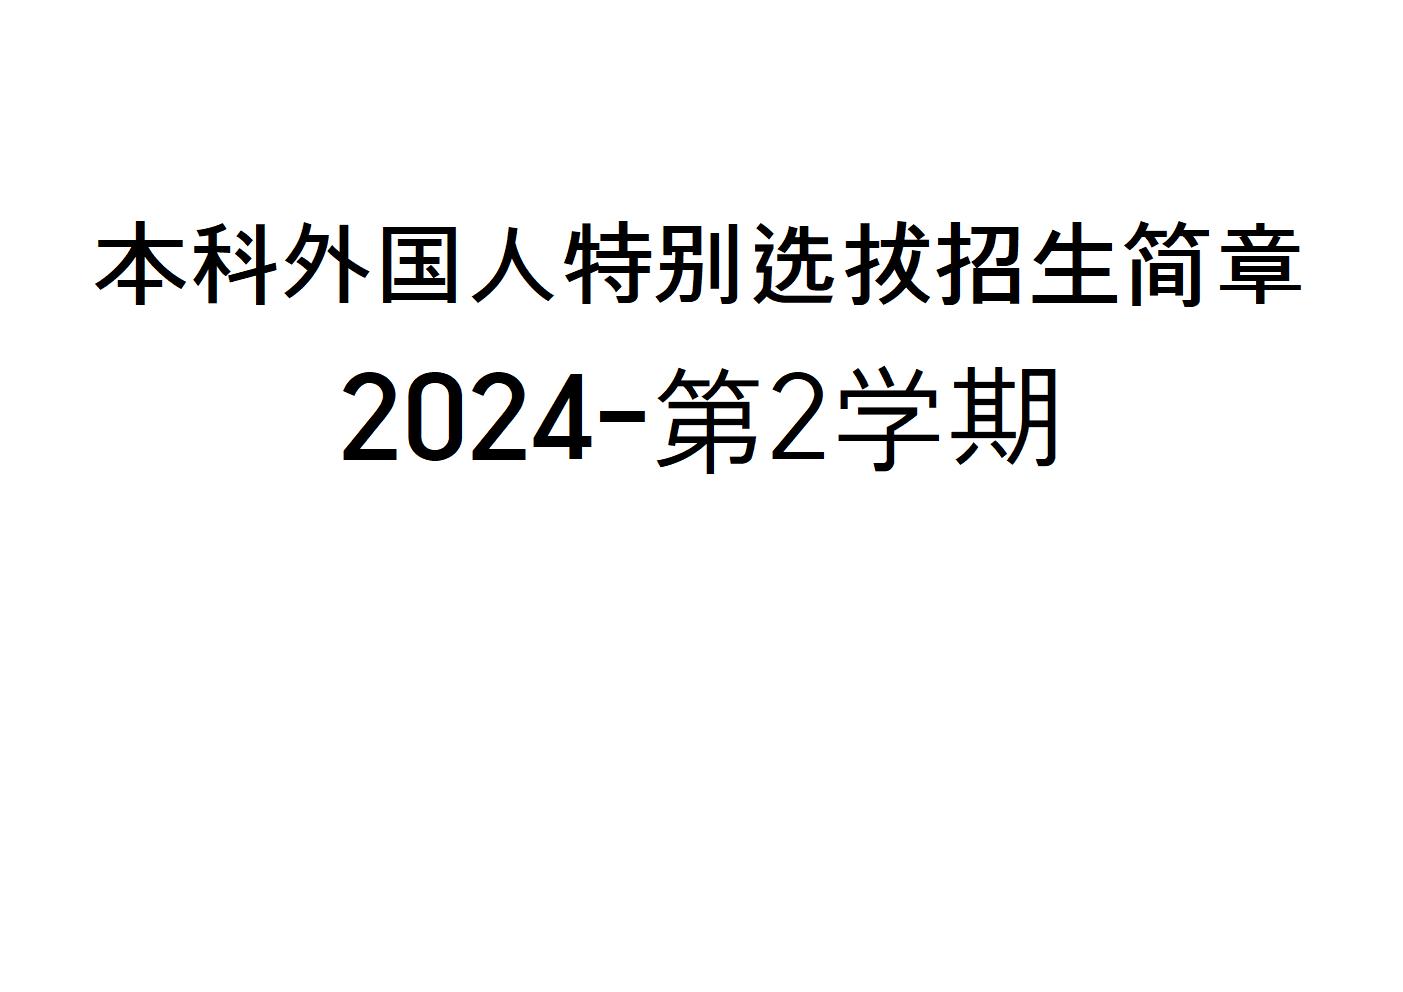 2024-第2学期 本科外国人特别选拔招生简章  대표이미지